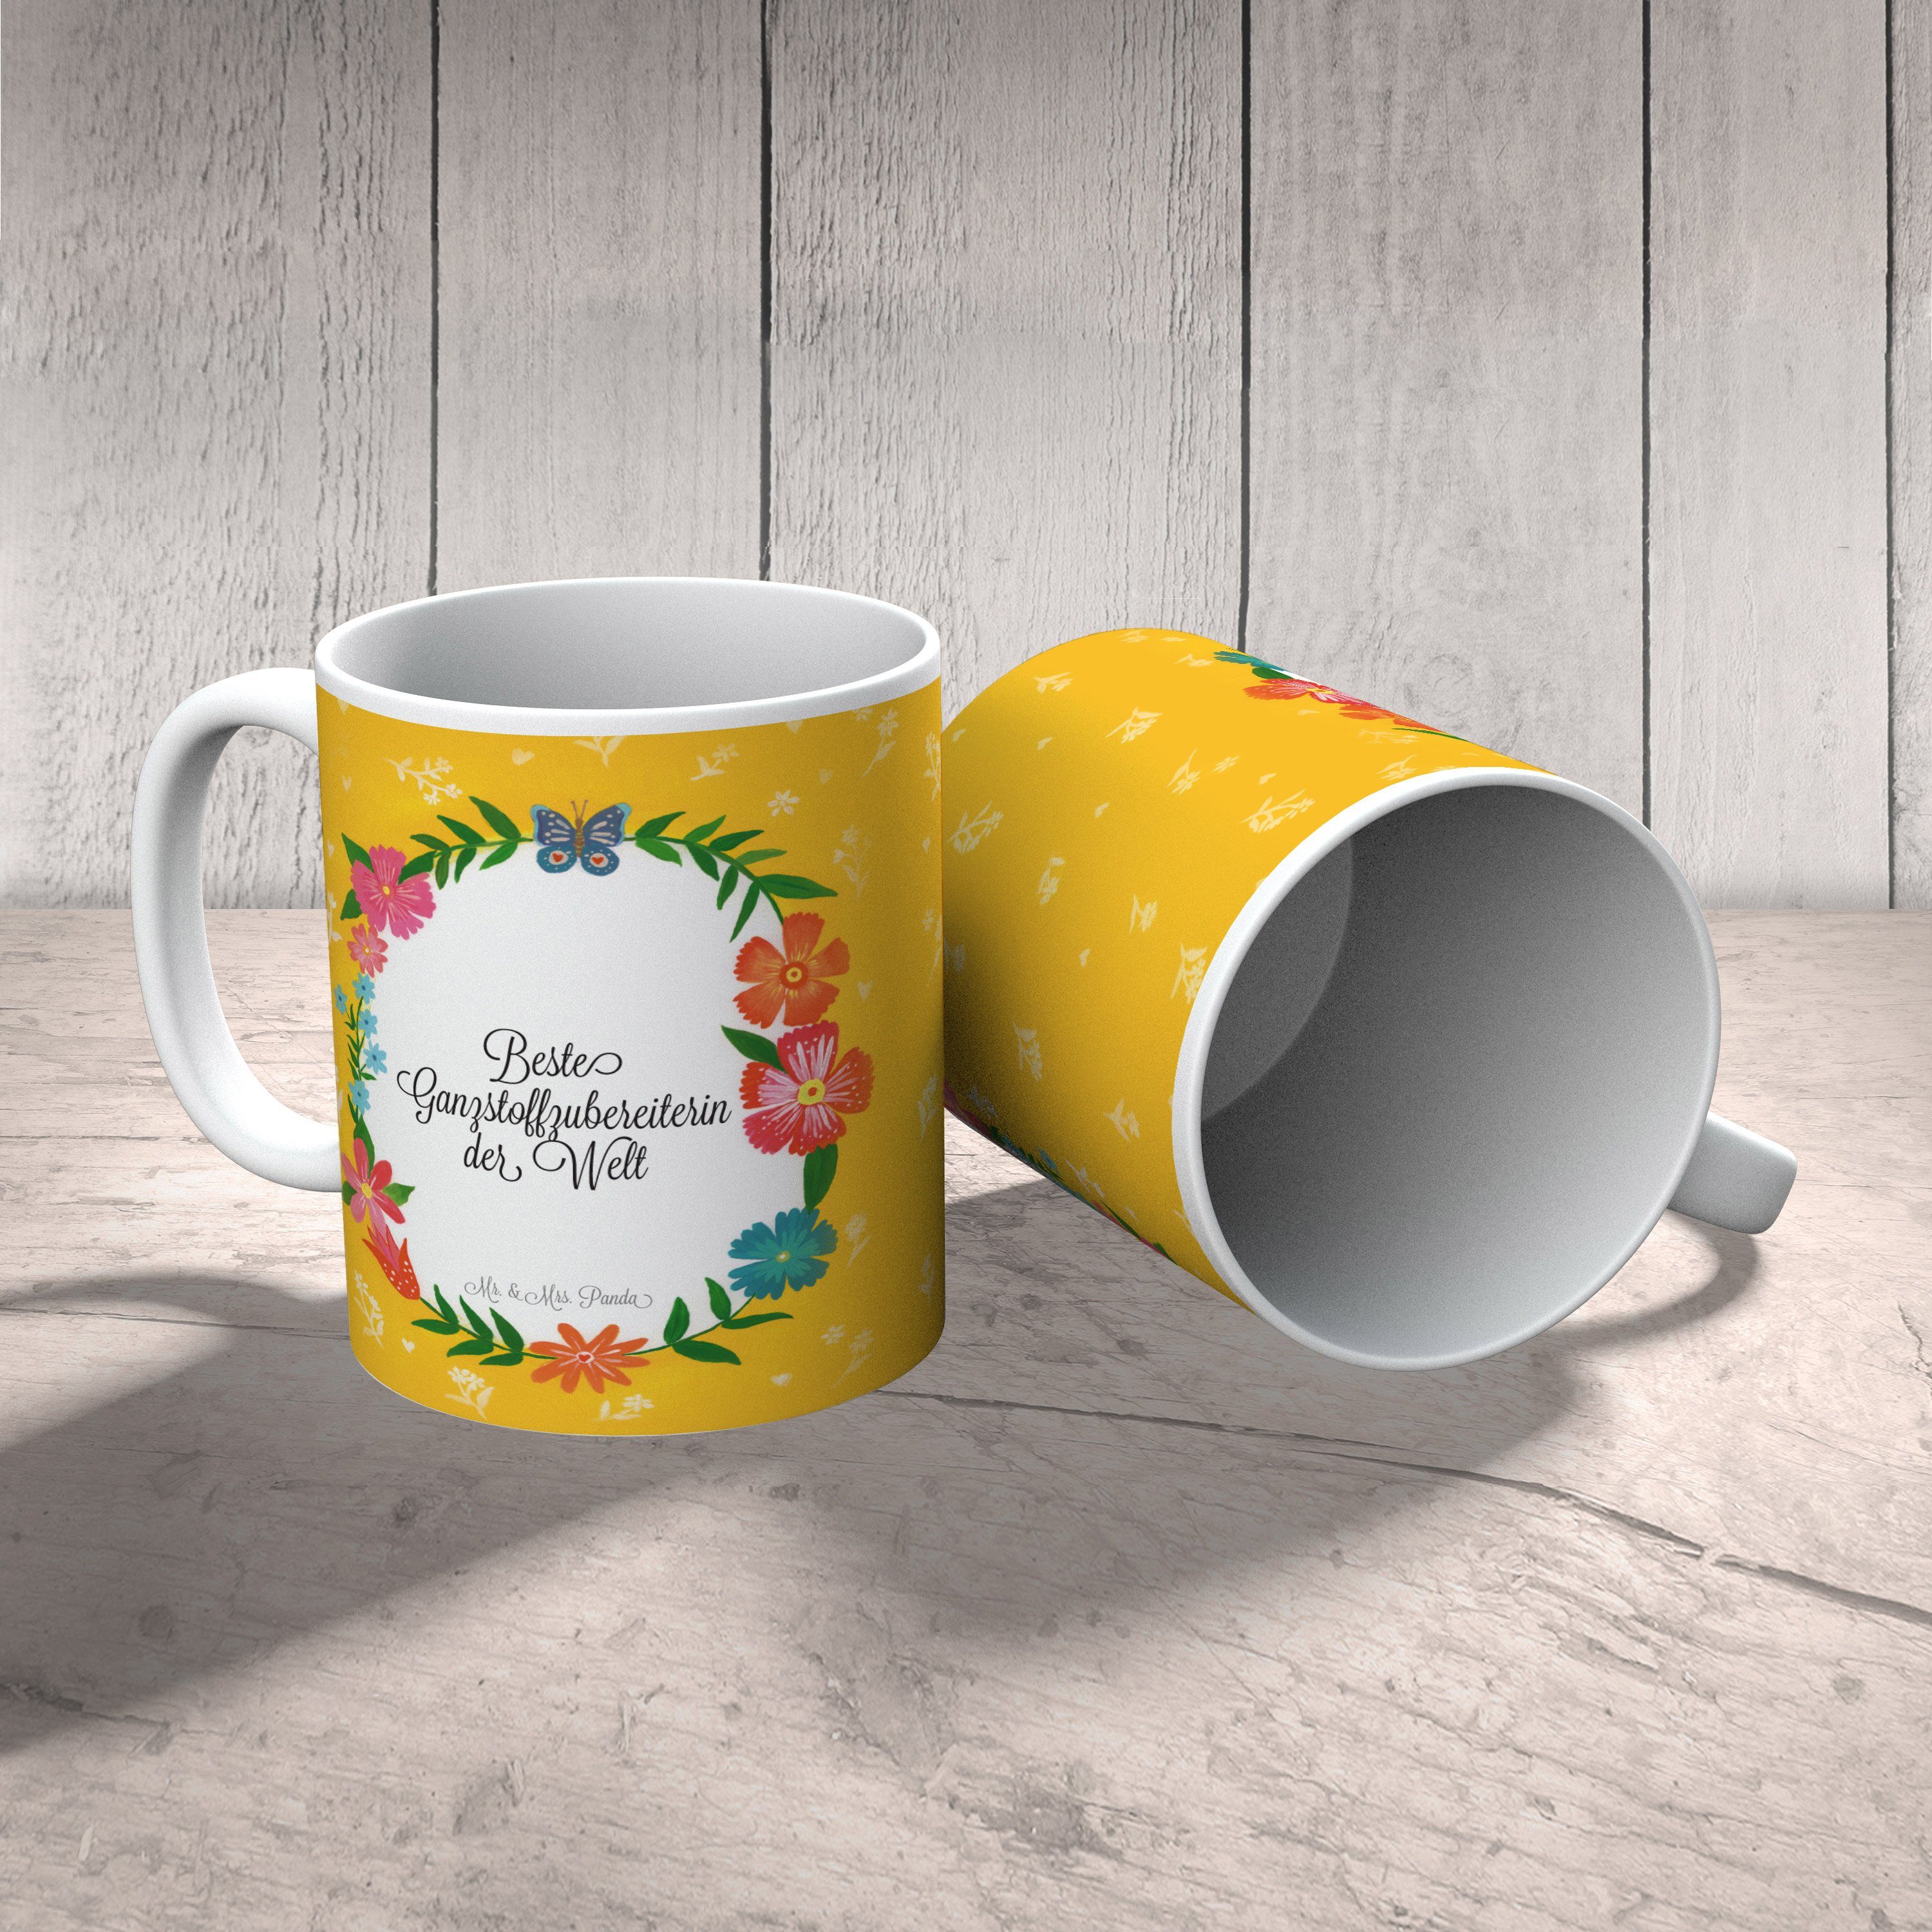 Mr. & Mrs. Panda Tasse Keramik Kaffeetass, Ausbildung, Ganzstoffzubereiterin - Geschenk, Gratulation